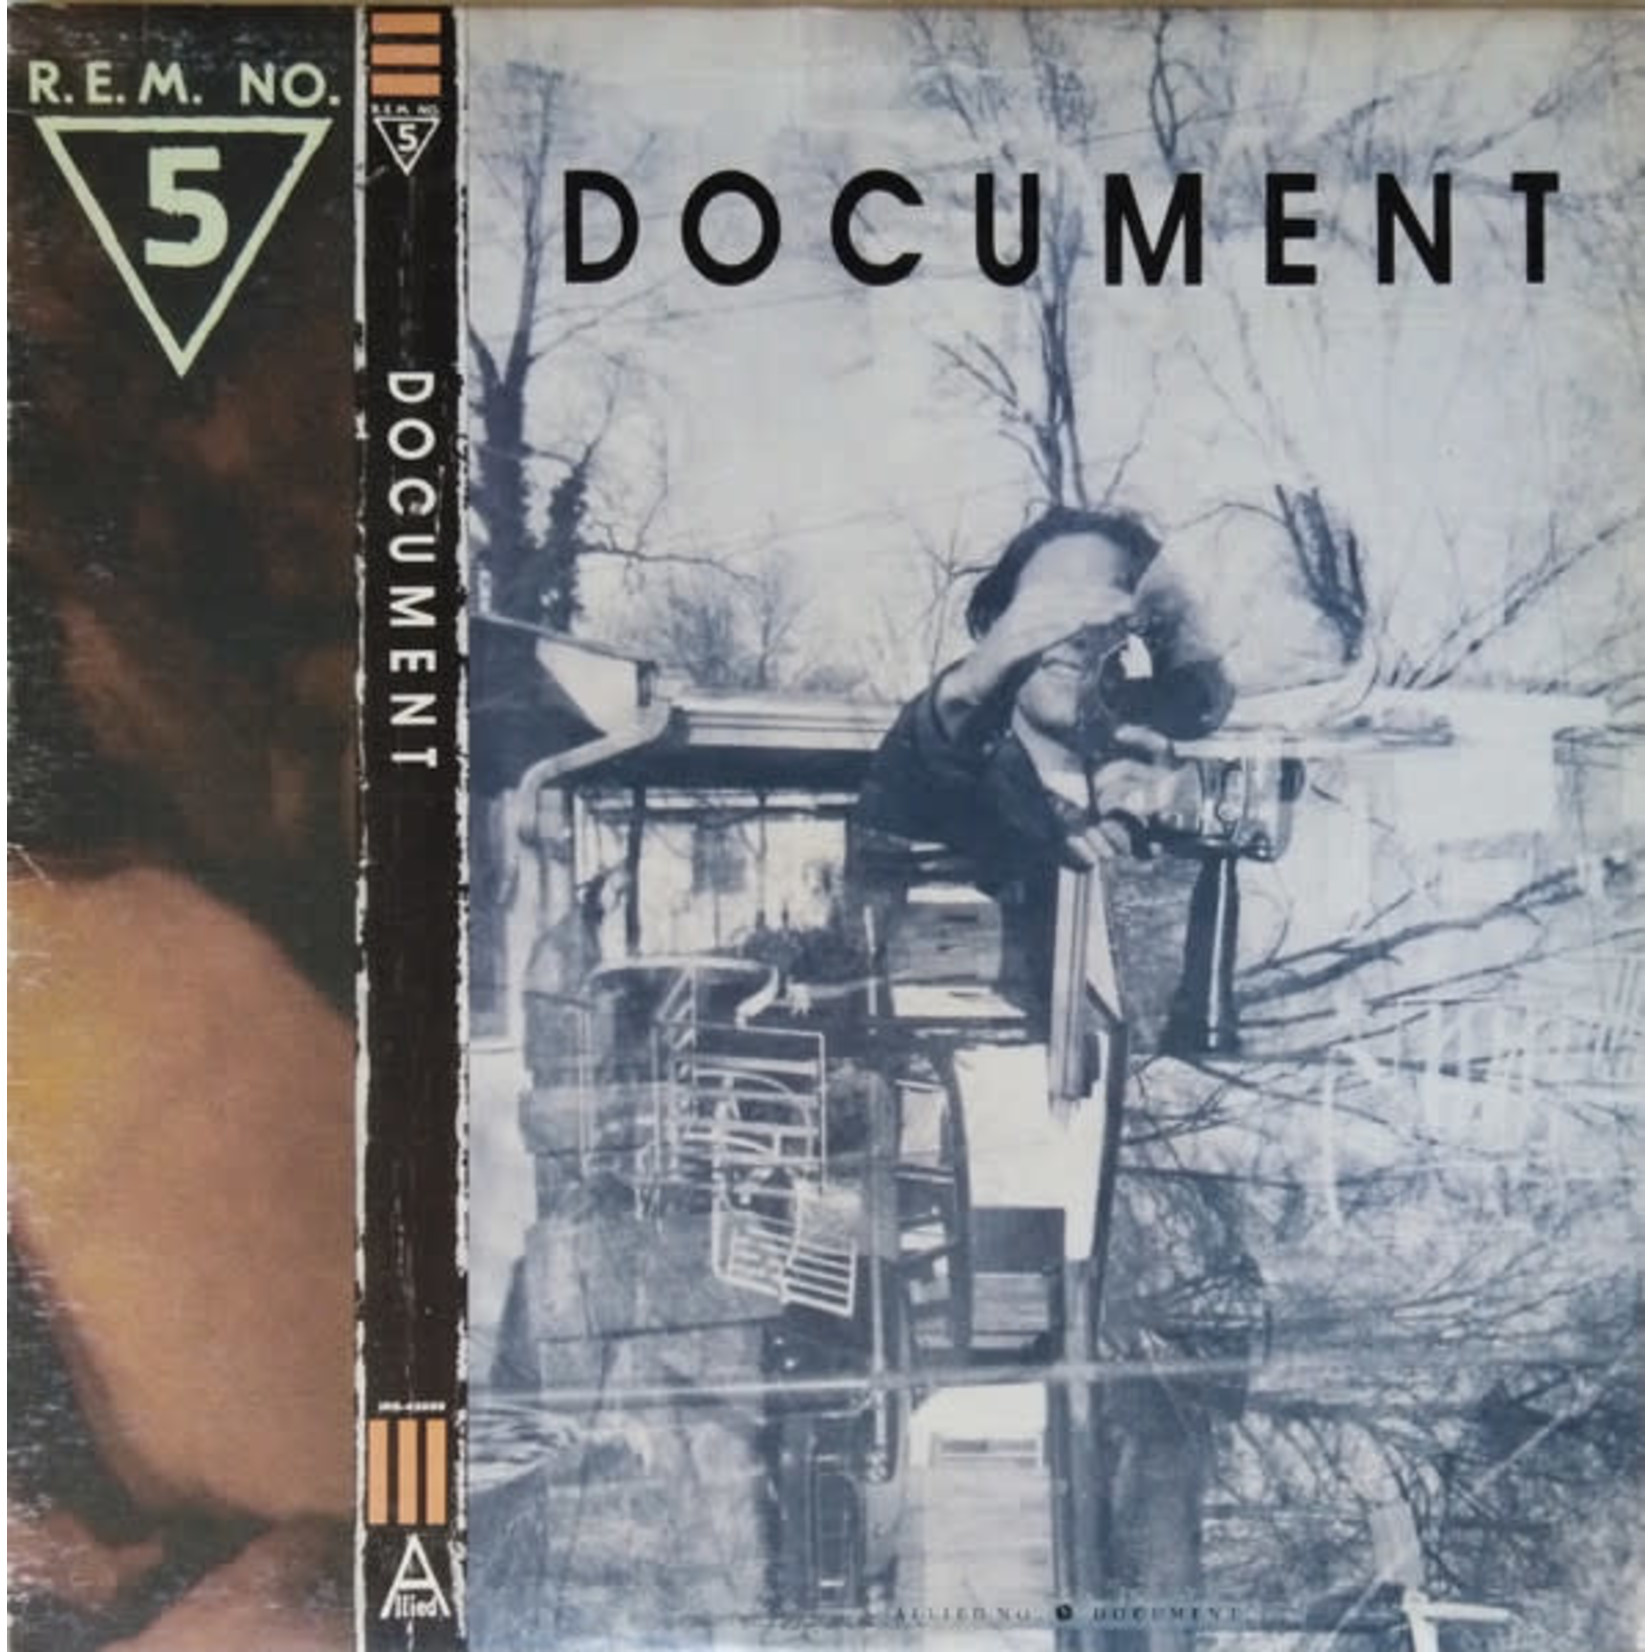 R.E.M. R.E.M. - Document (LP, IRS-42059, VG)